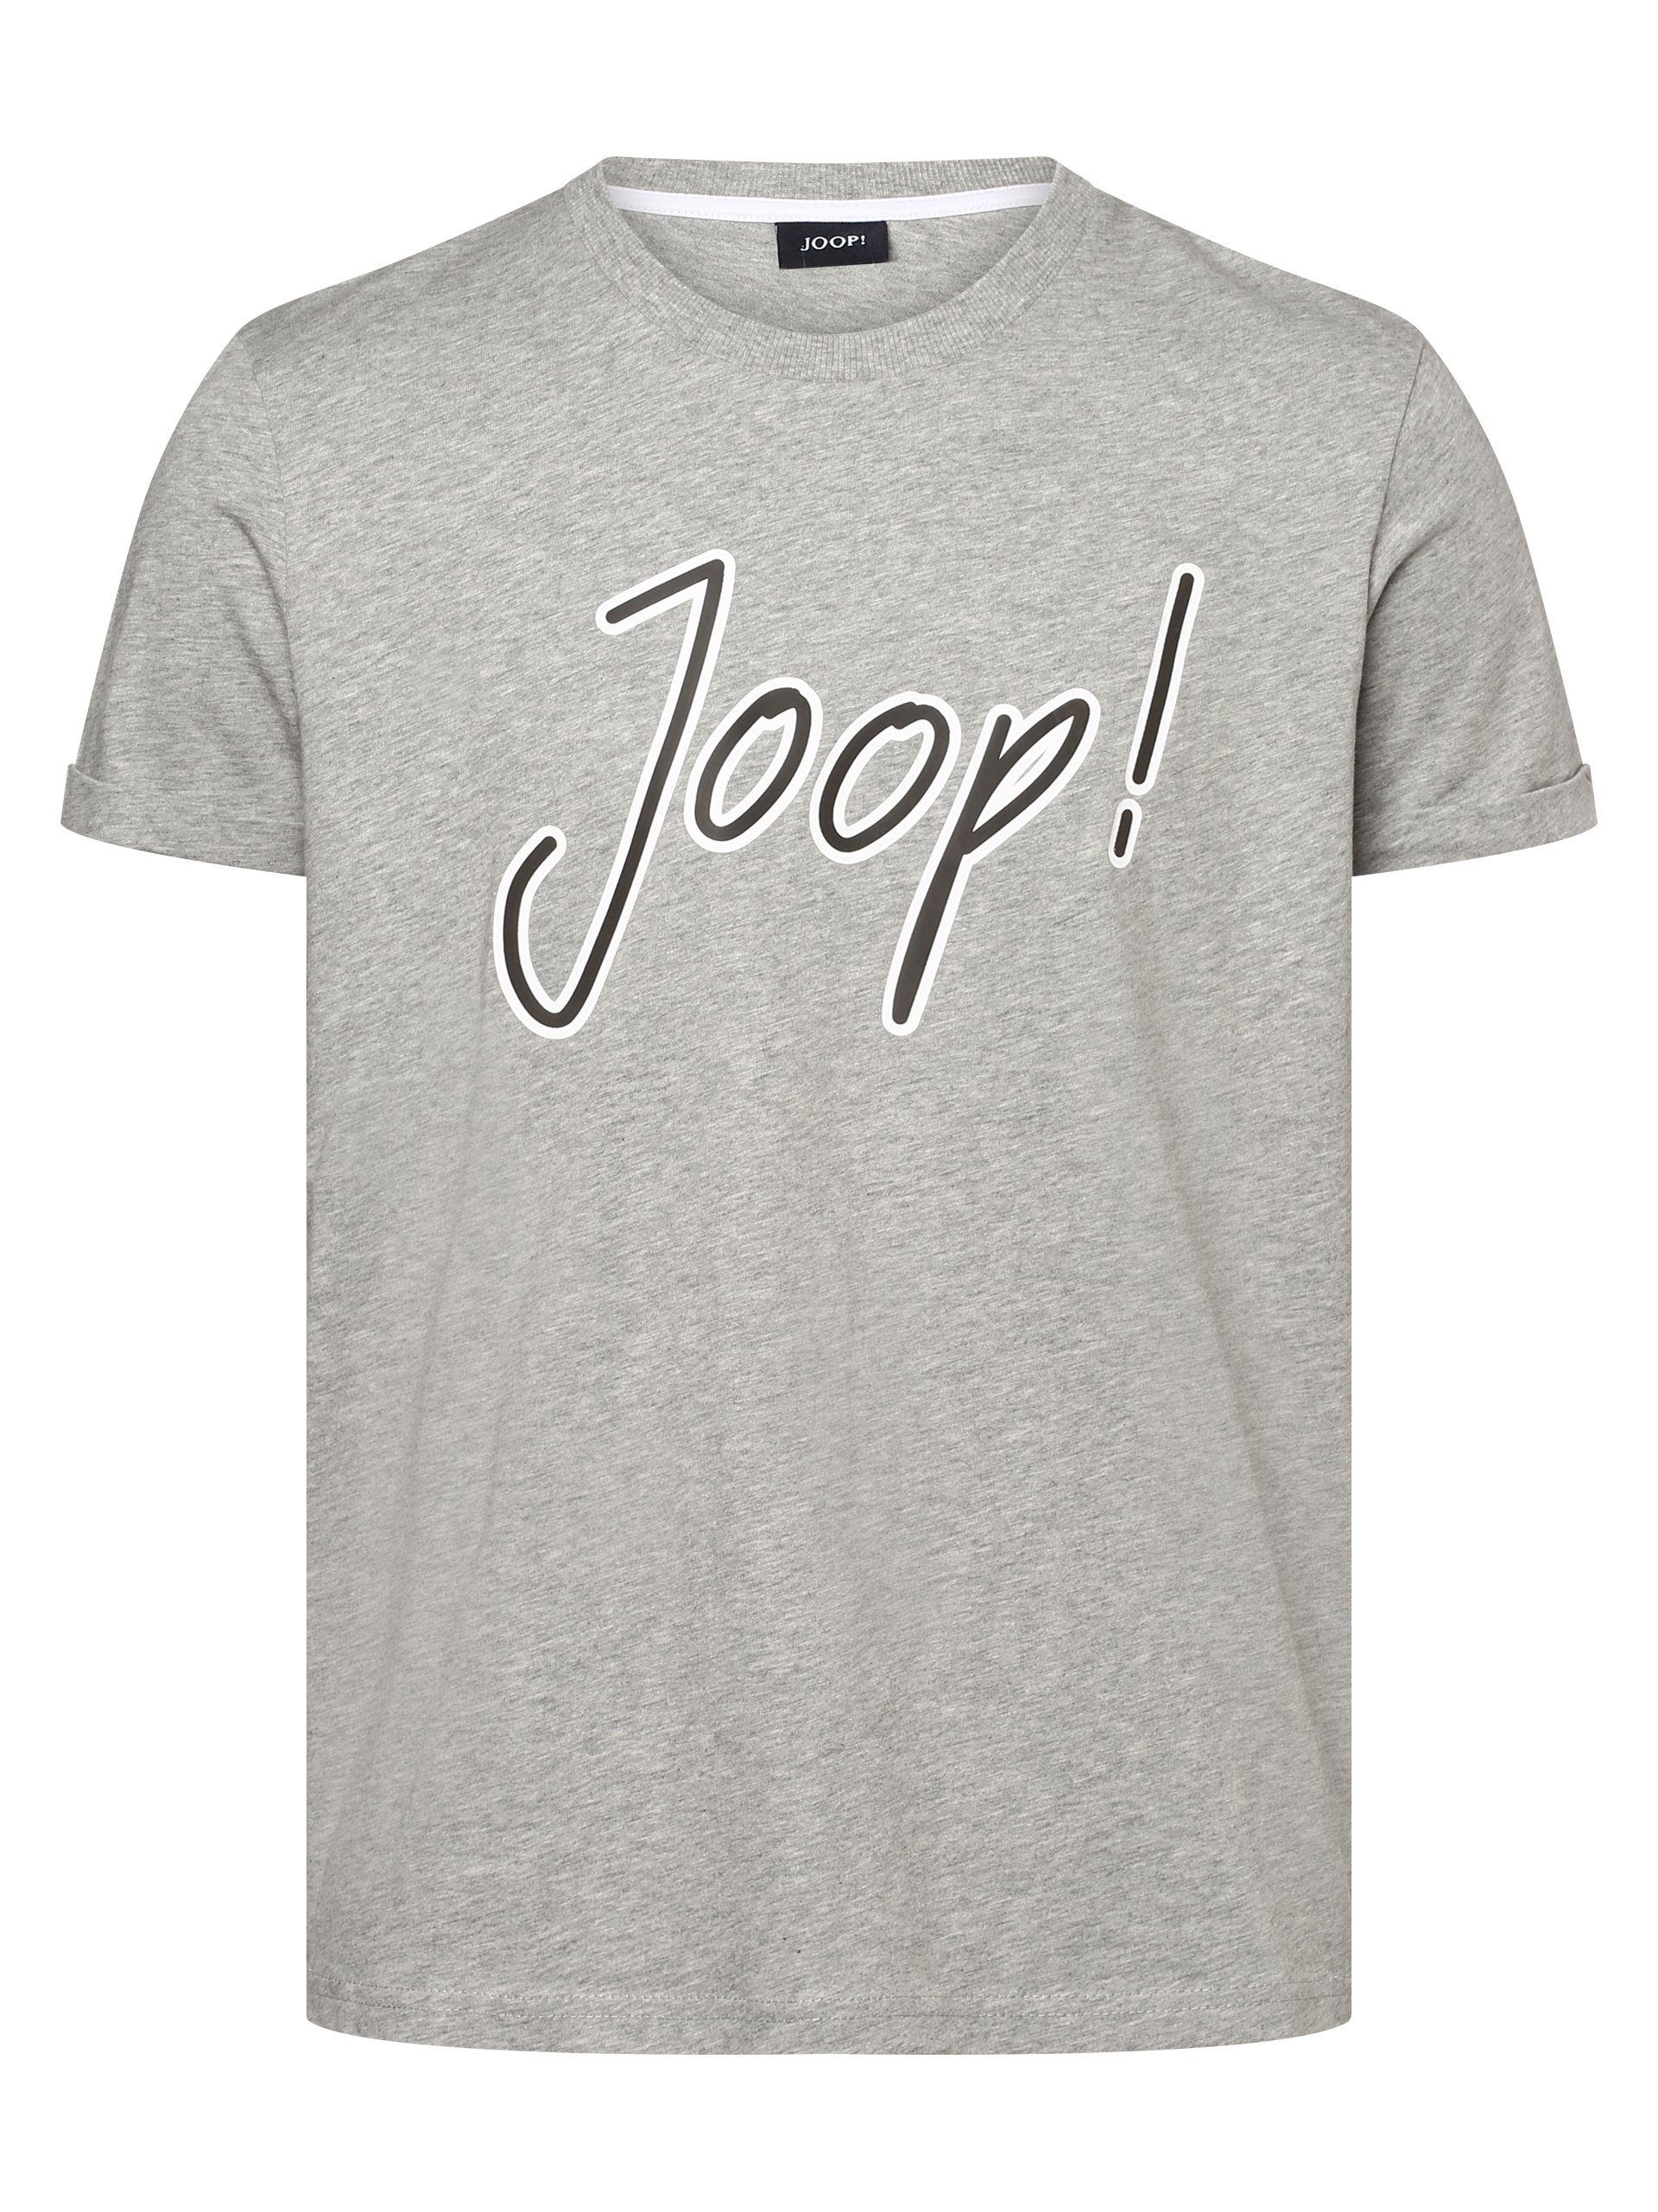 Joop! T-Shirt Adreon Grau